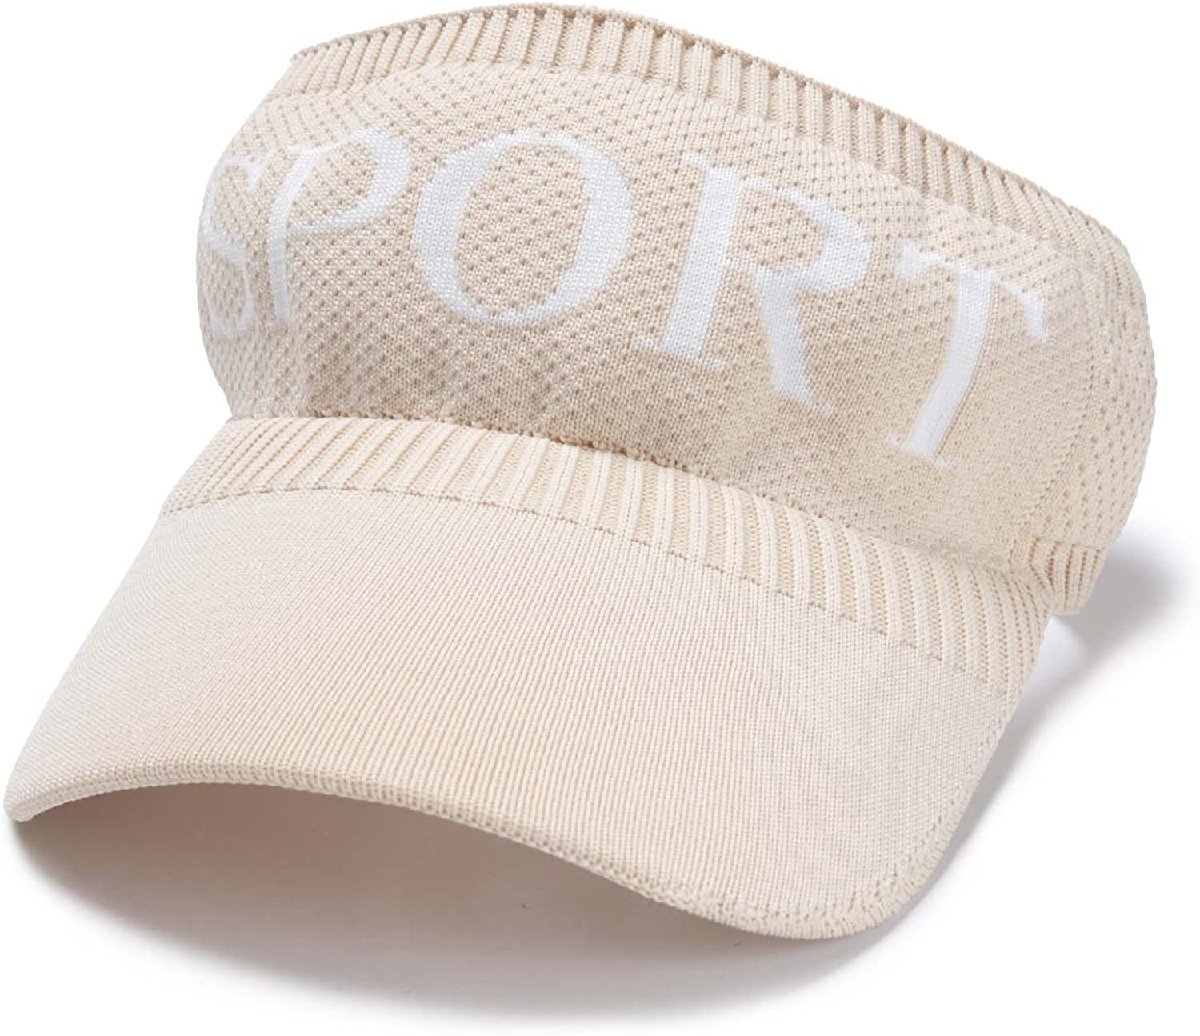 2021年製 サンバイザー ベージュ UV対策 紫外線対策 熱中症対策 ゴルフ キャップ 帽子